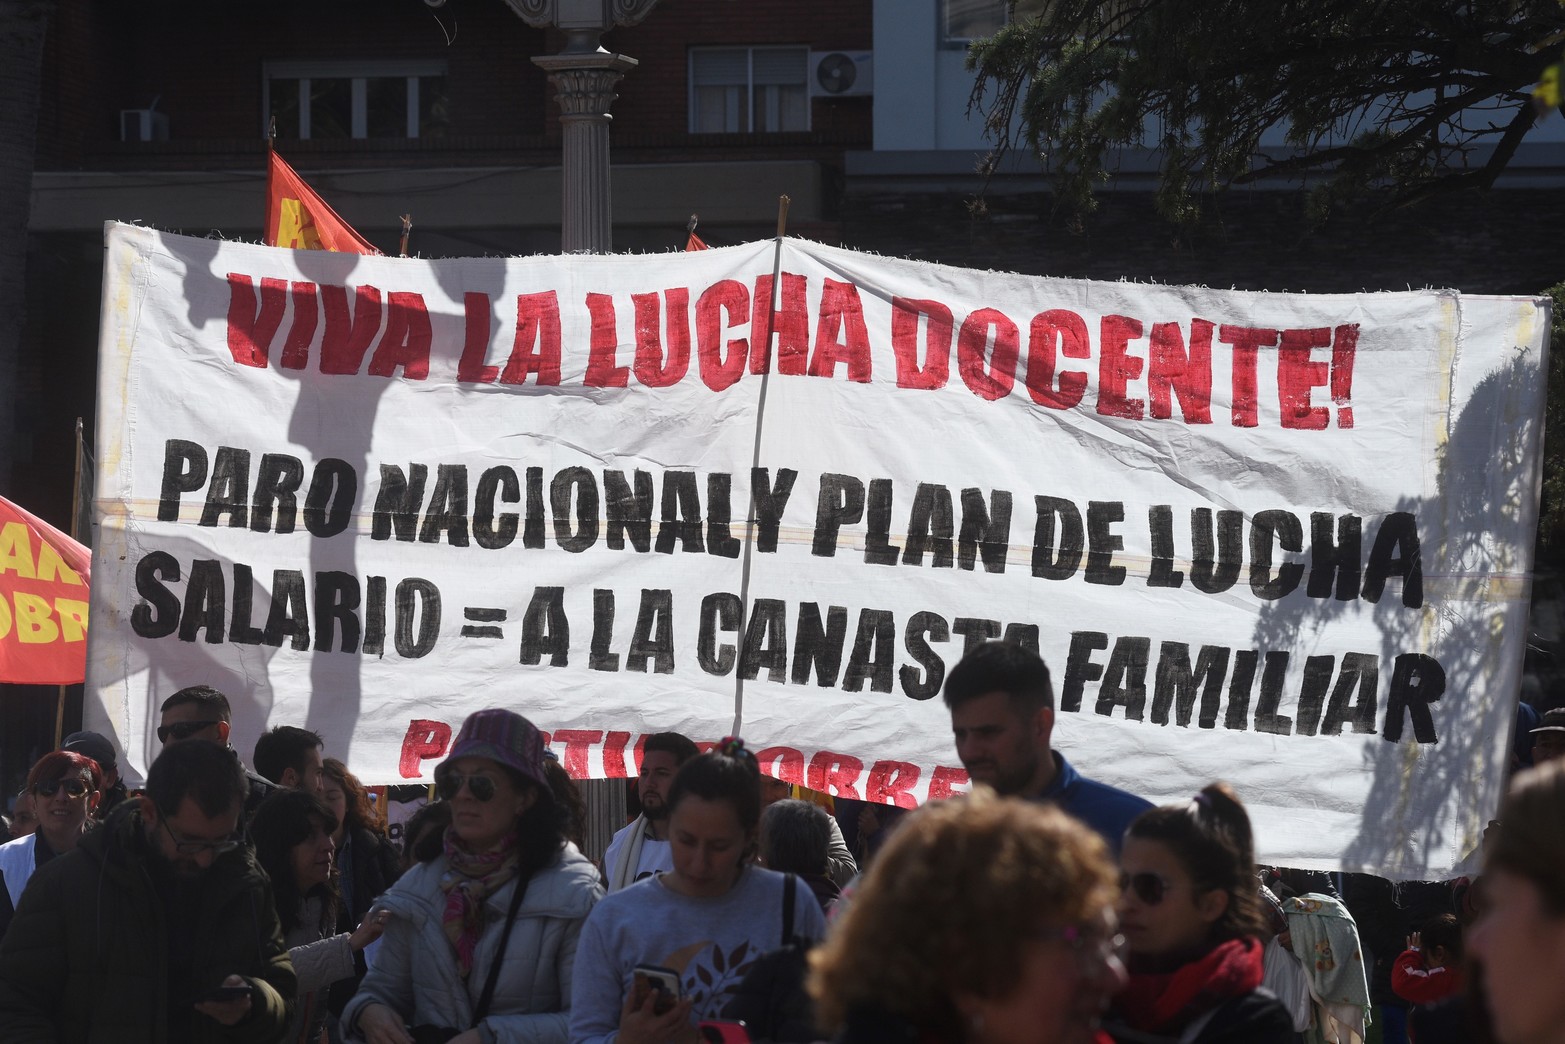 La CTERA nacional lanzó un plan de lucha para que se abran las paritarias en varias provincias del país. Foto Mauricio Garín